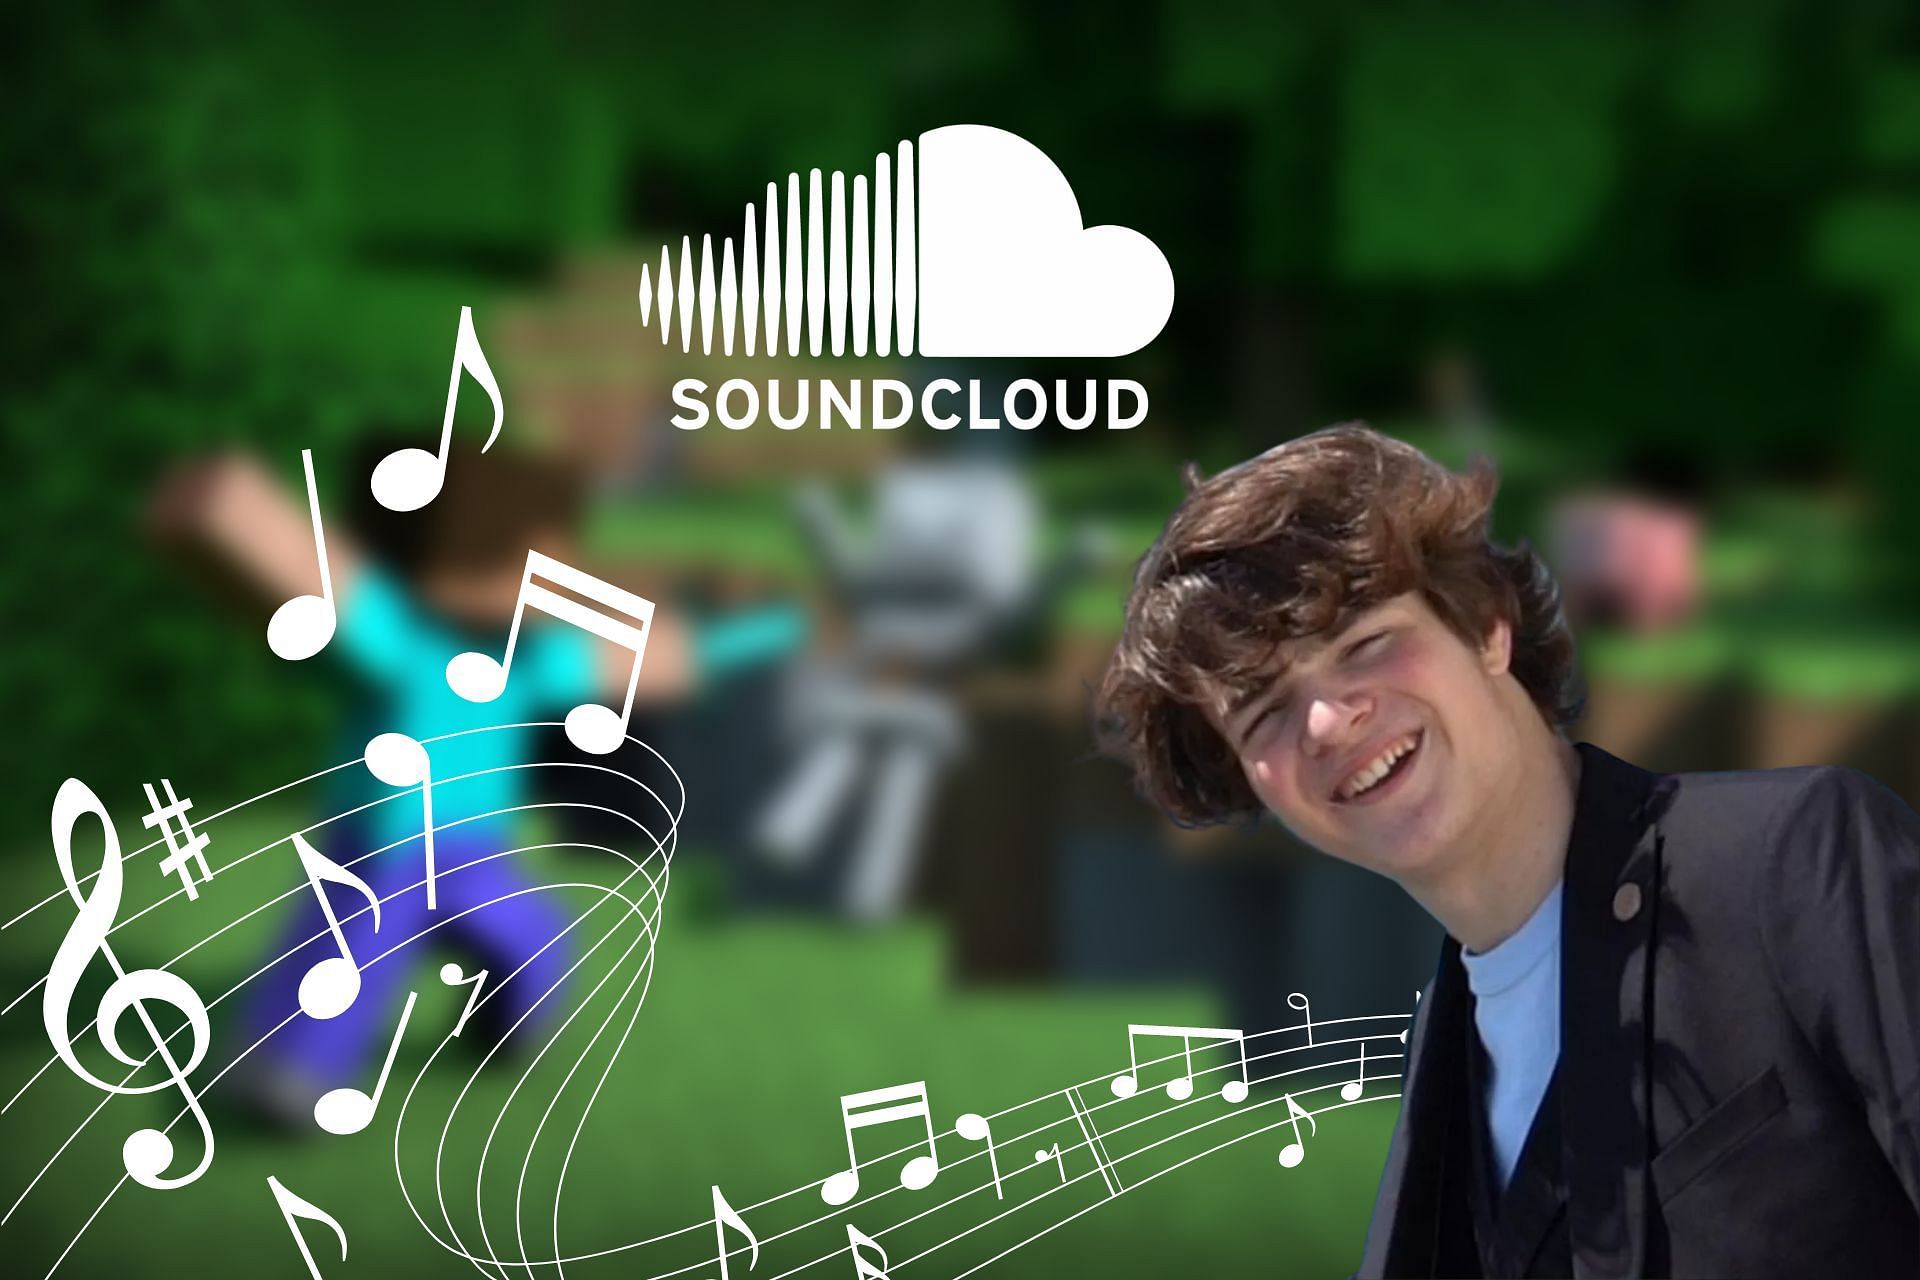 Stream ＊*•̩̩͙✩•̩̩͙*˚♡˚*•̩̩͙✩•̩̩͙*˚＊  Listen to TUBBO POGGERS🤧♡ playlist  online for free on SoundCloud